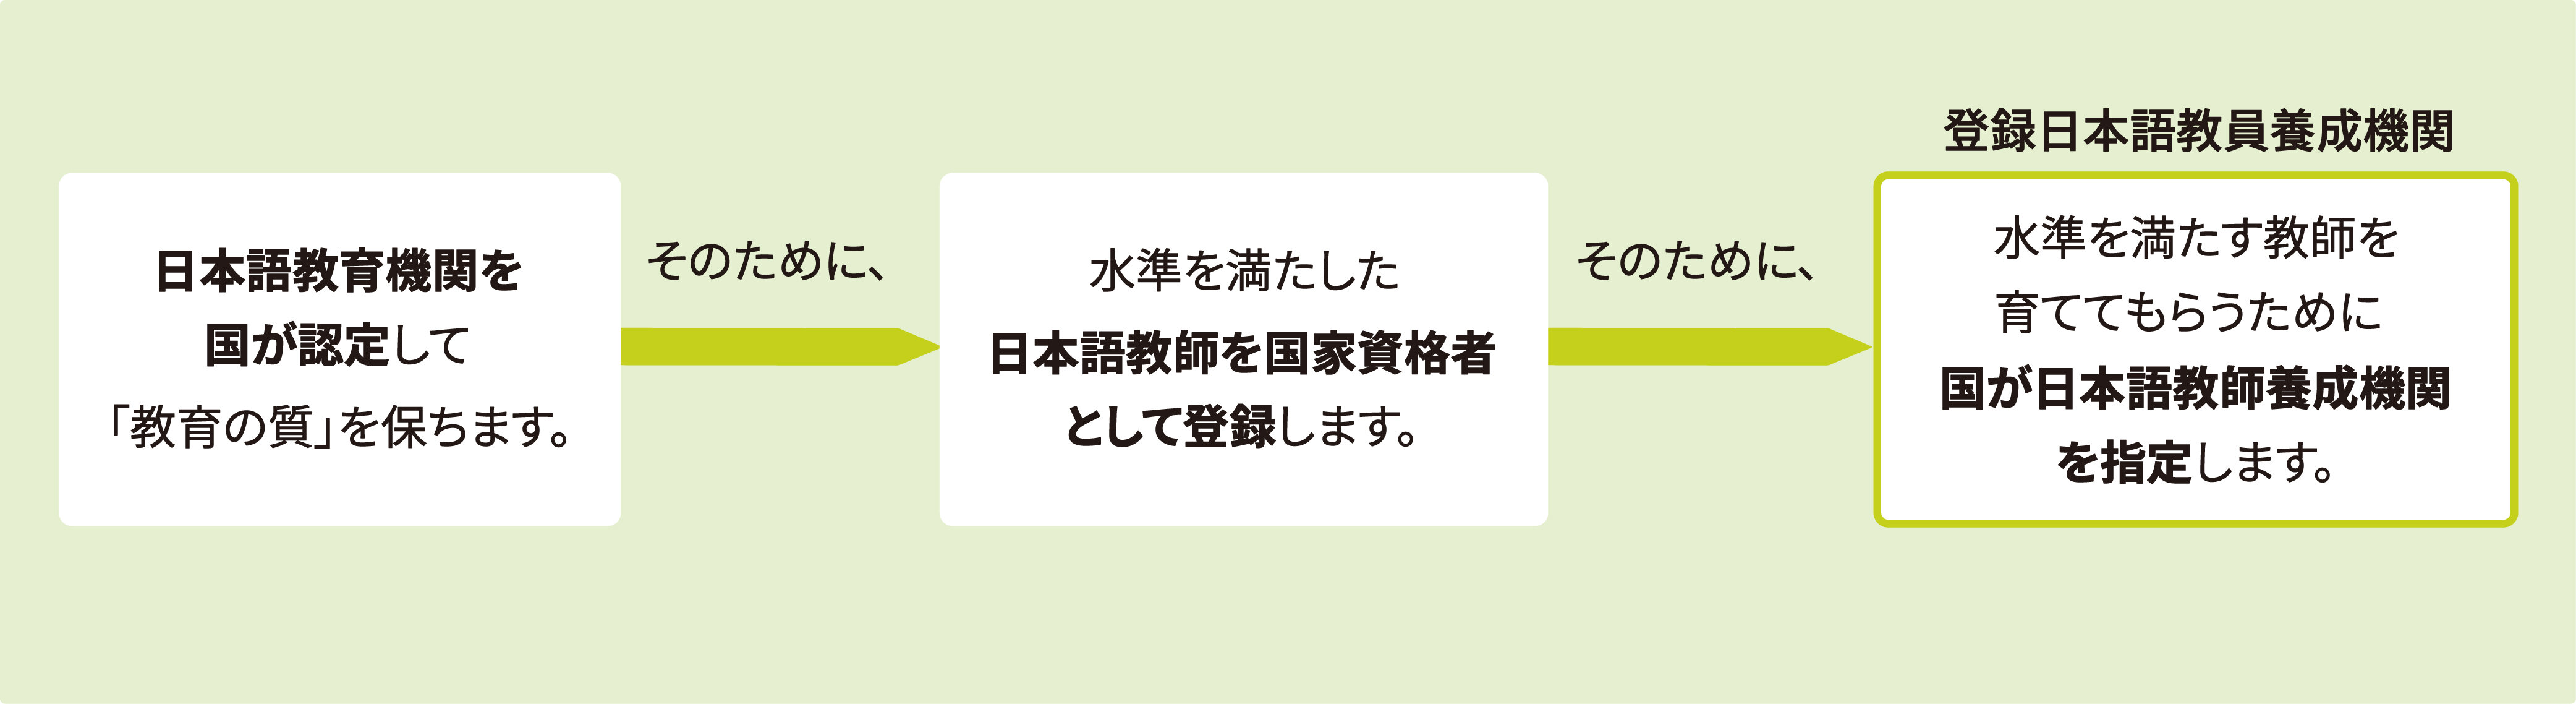 「認定日本語教育機関」イメージ図